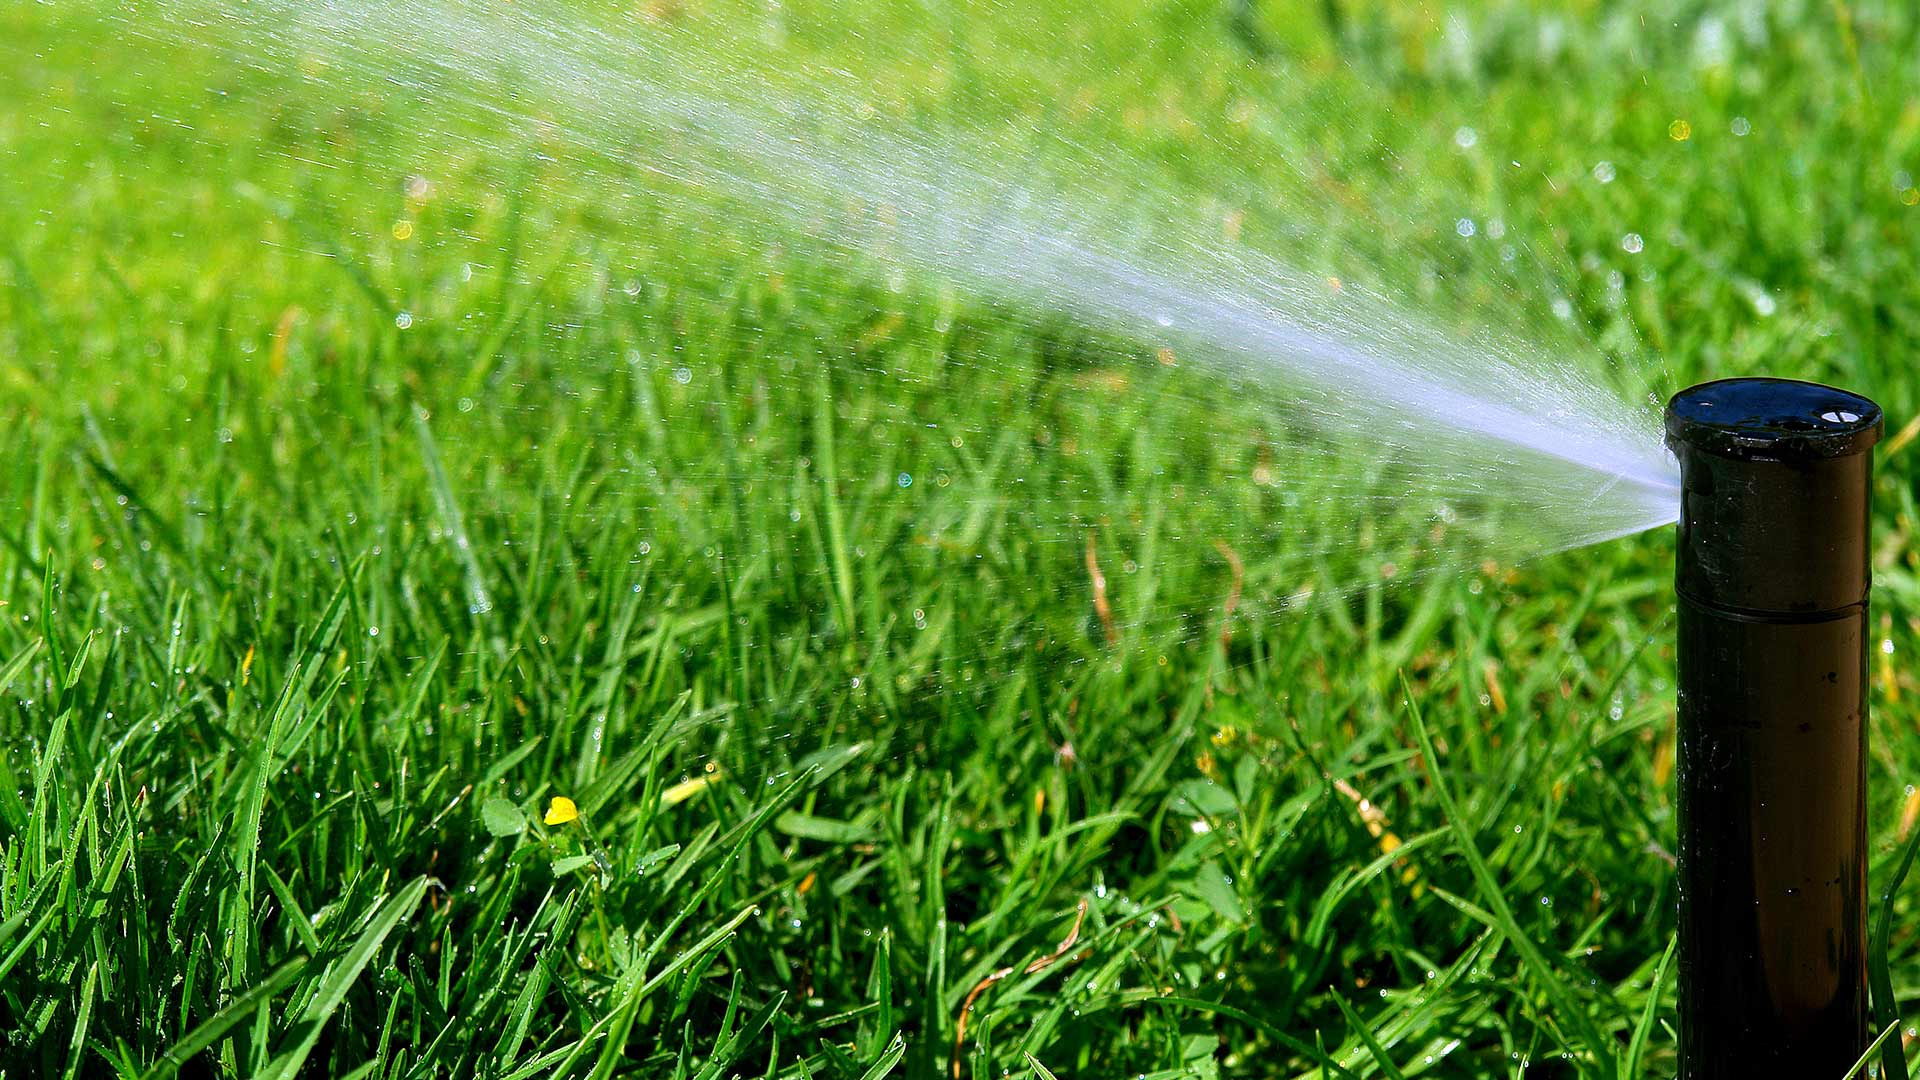 Irrigation sprinkler head watering lawn in Bondurant, IA.